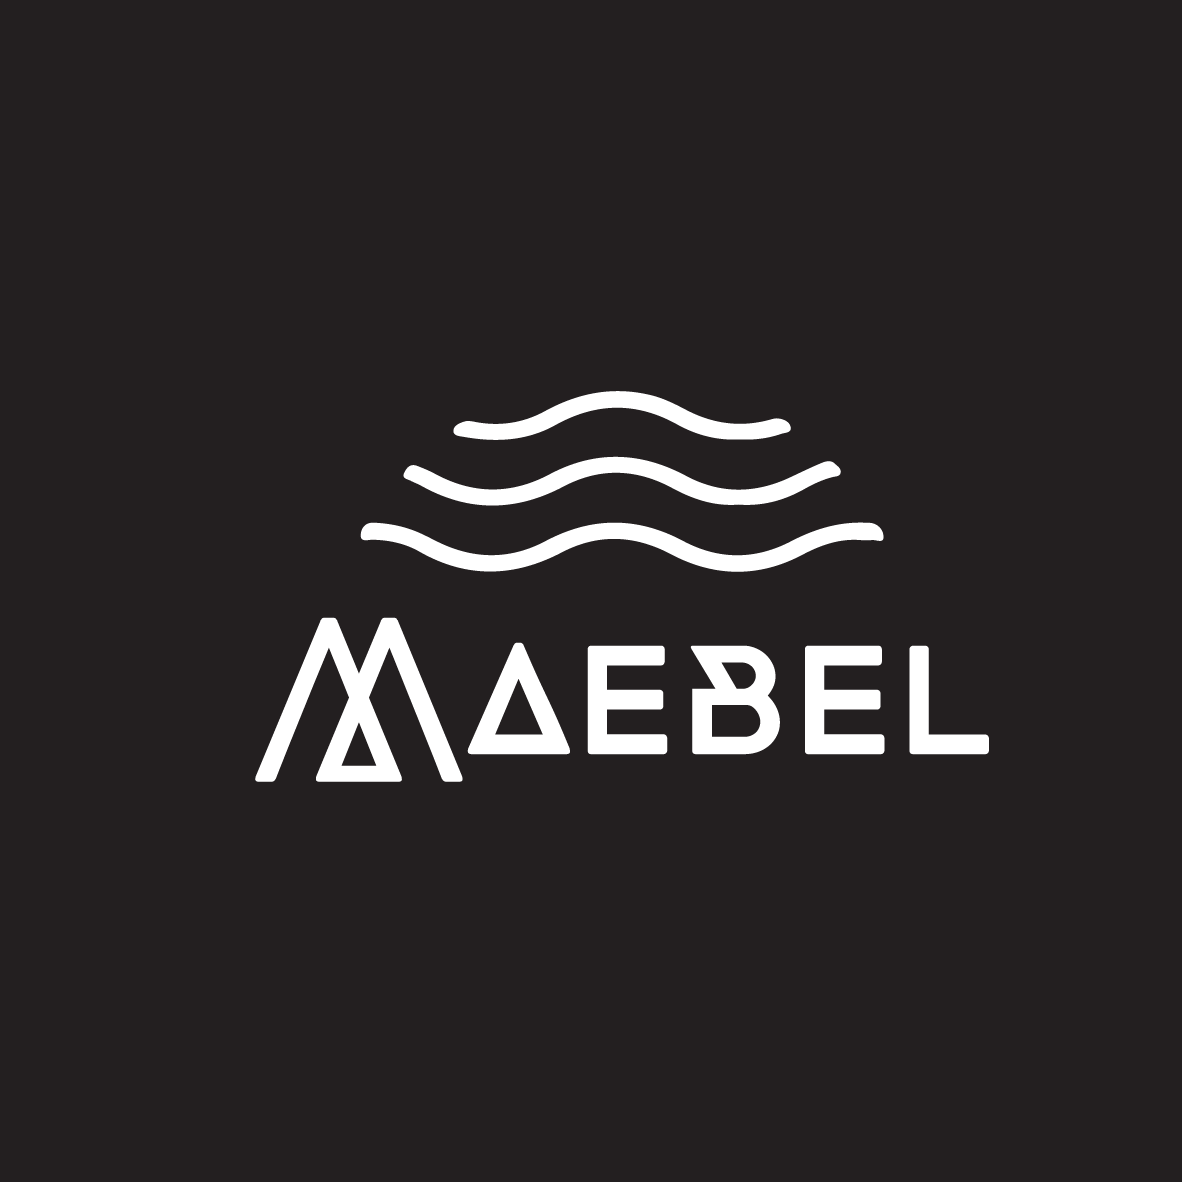 Maebel